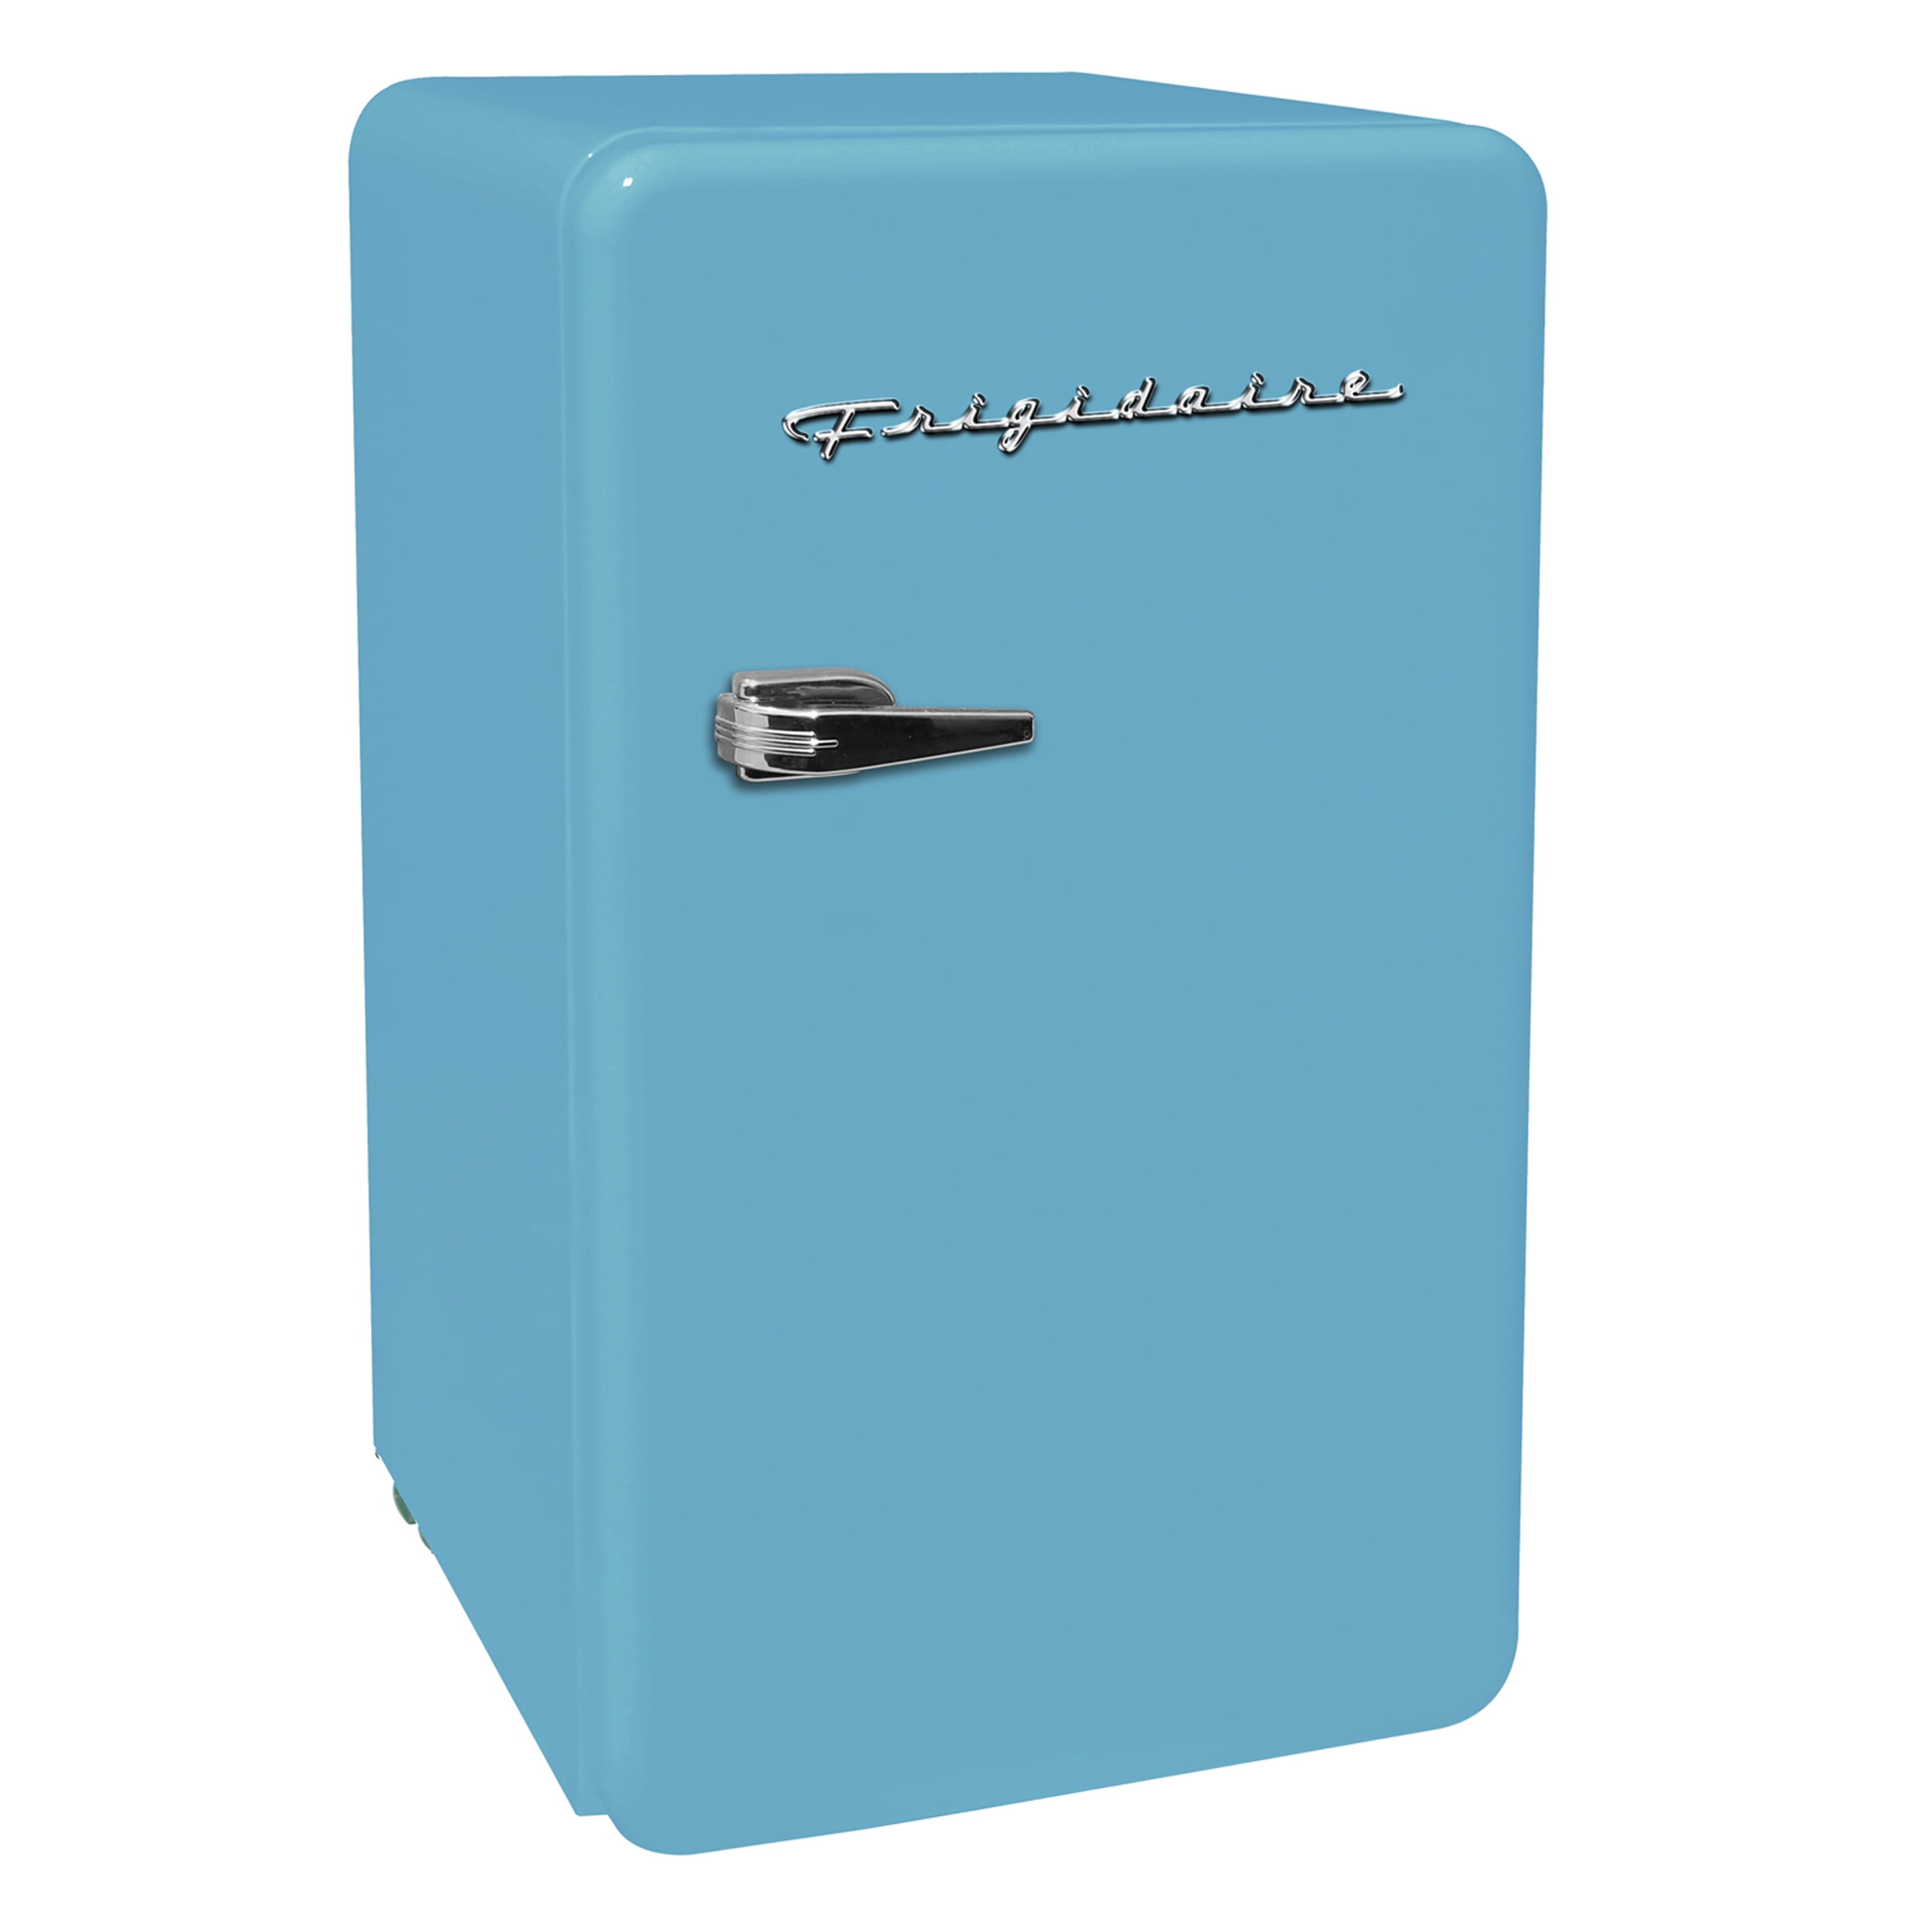 Insignia Refrigerator Mini